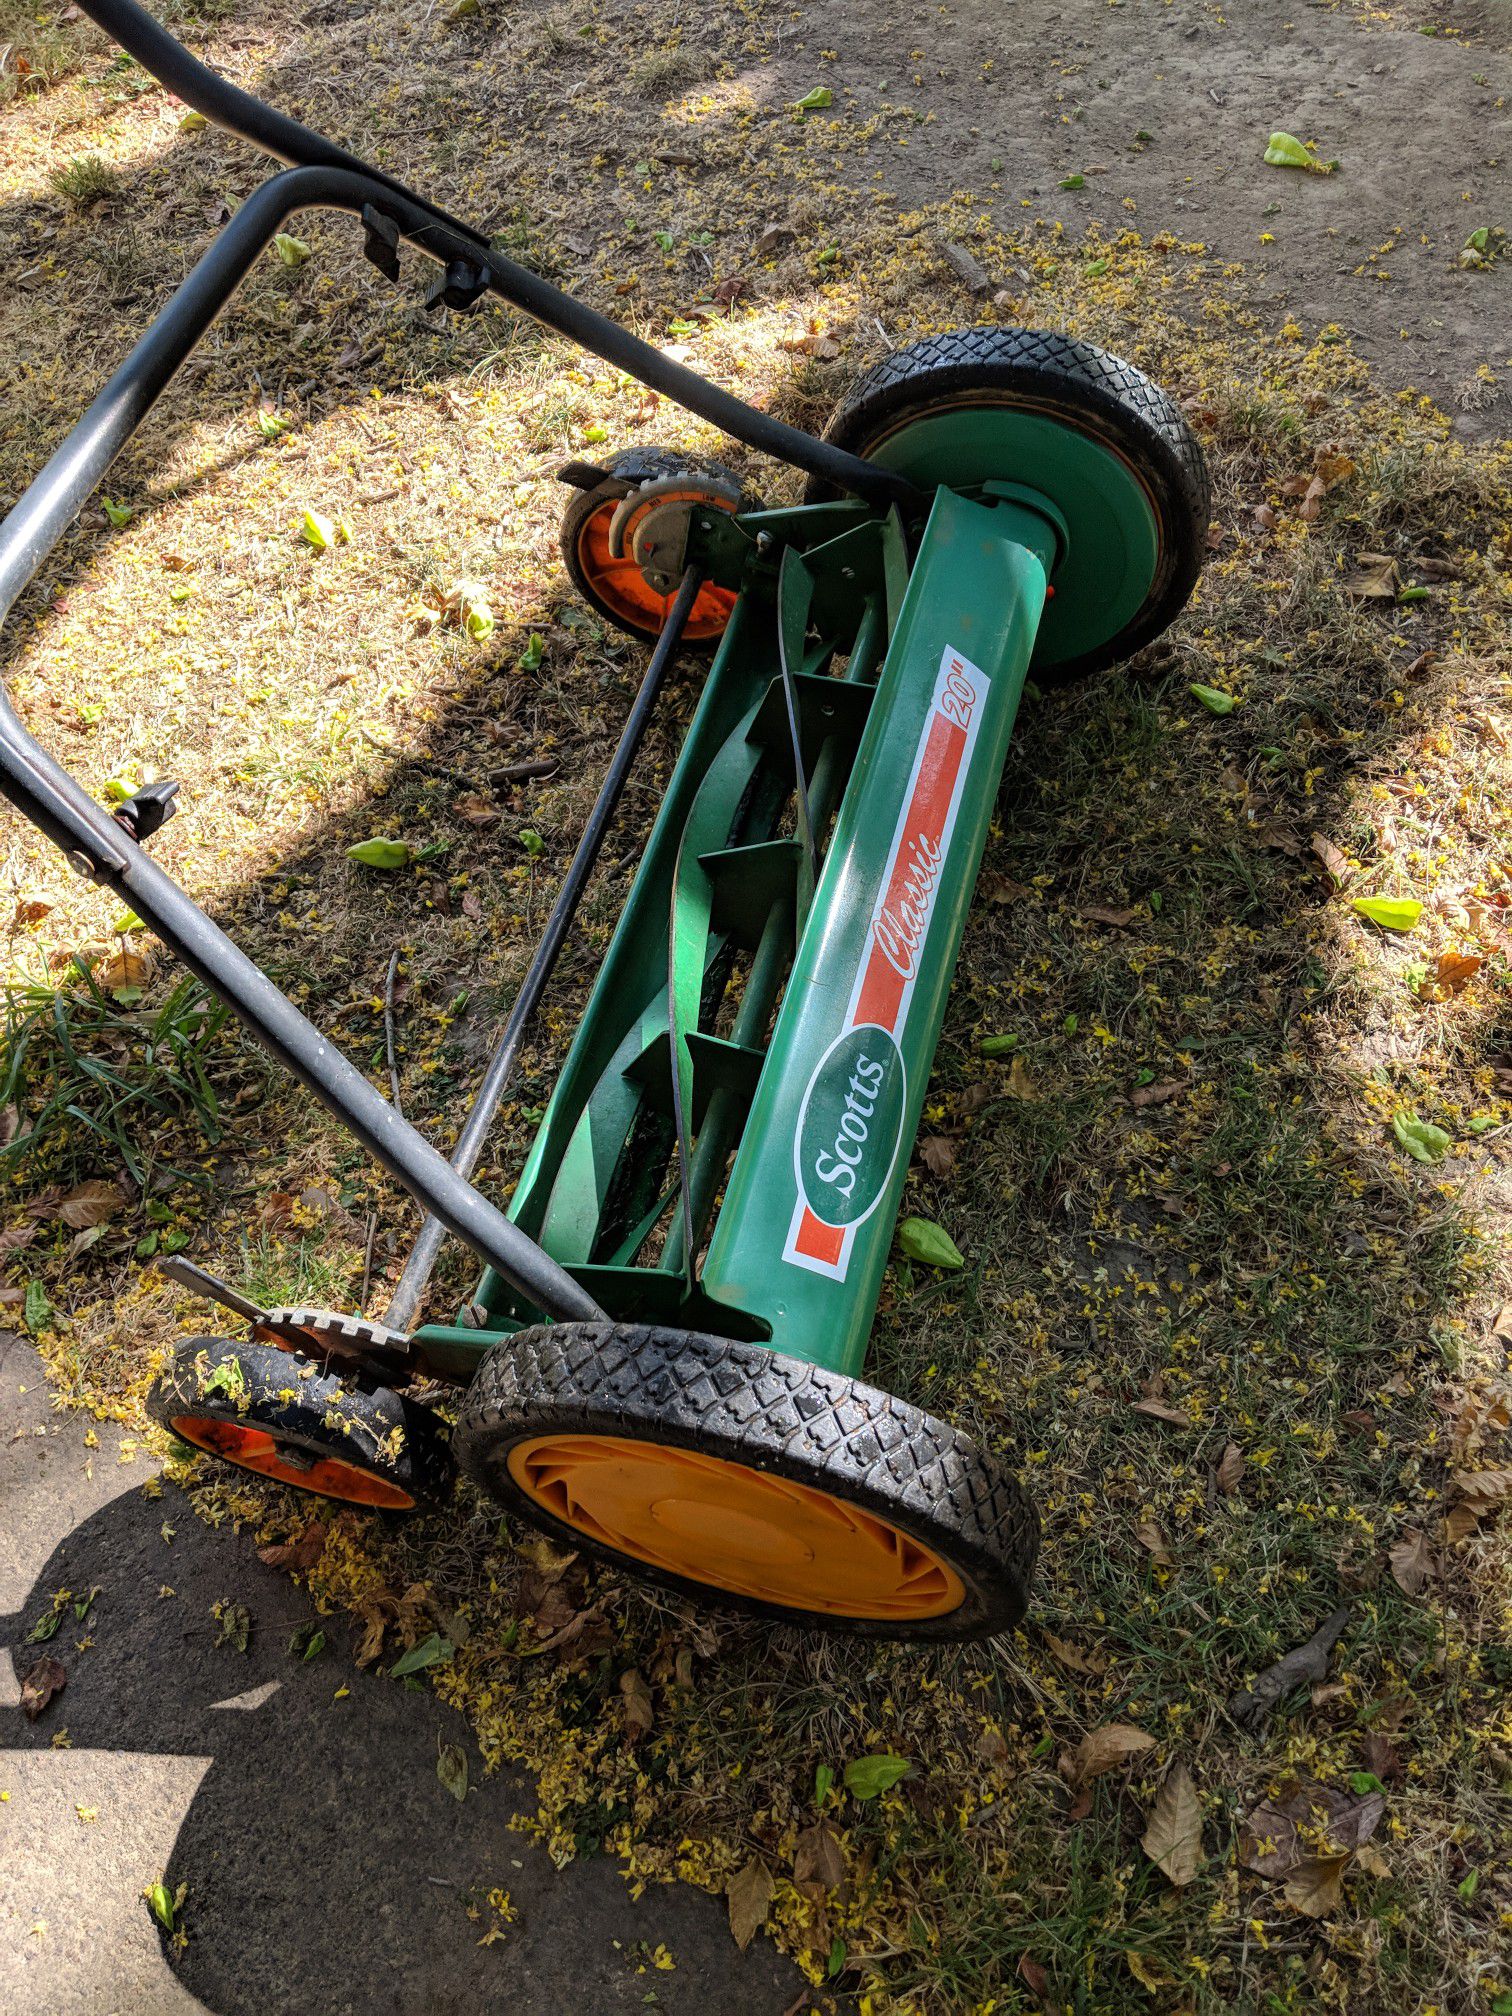 Scott brand push lawn mower.